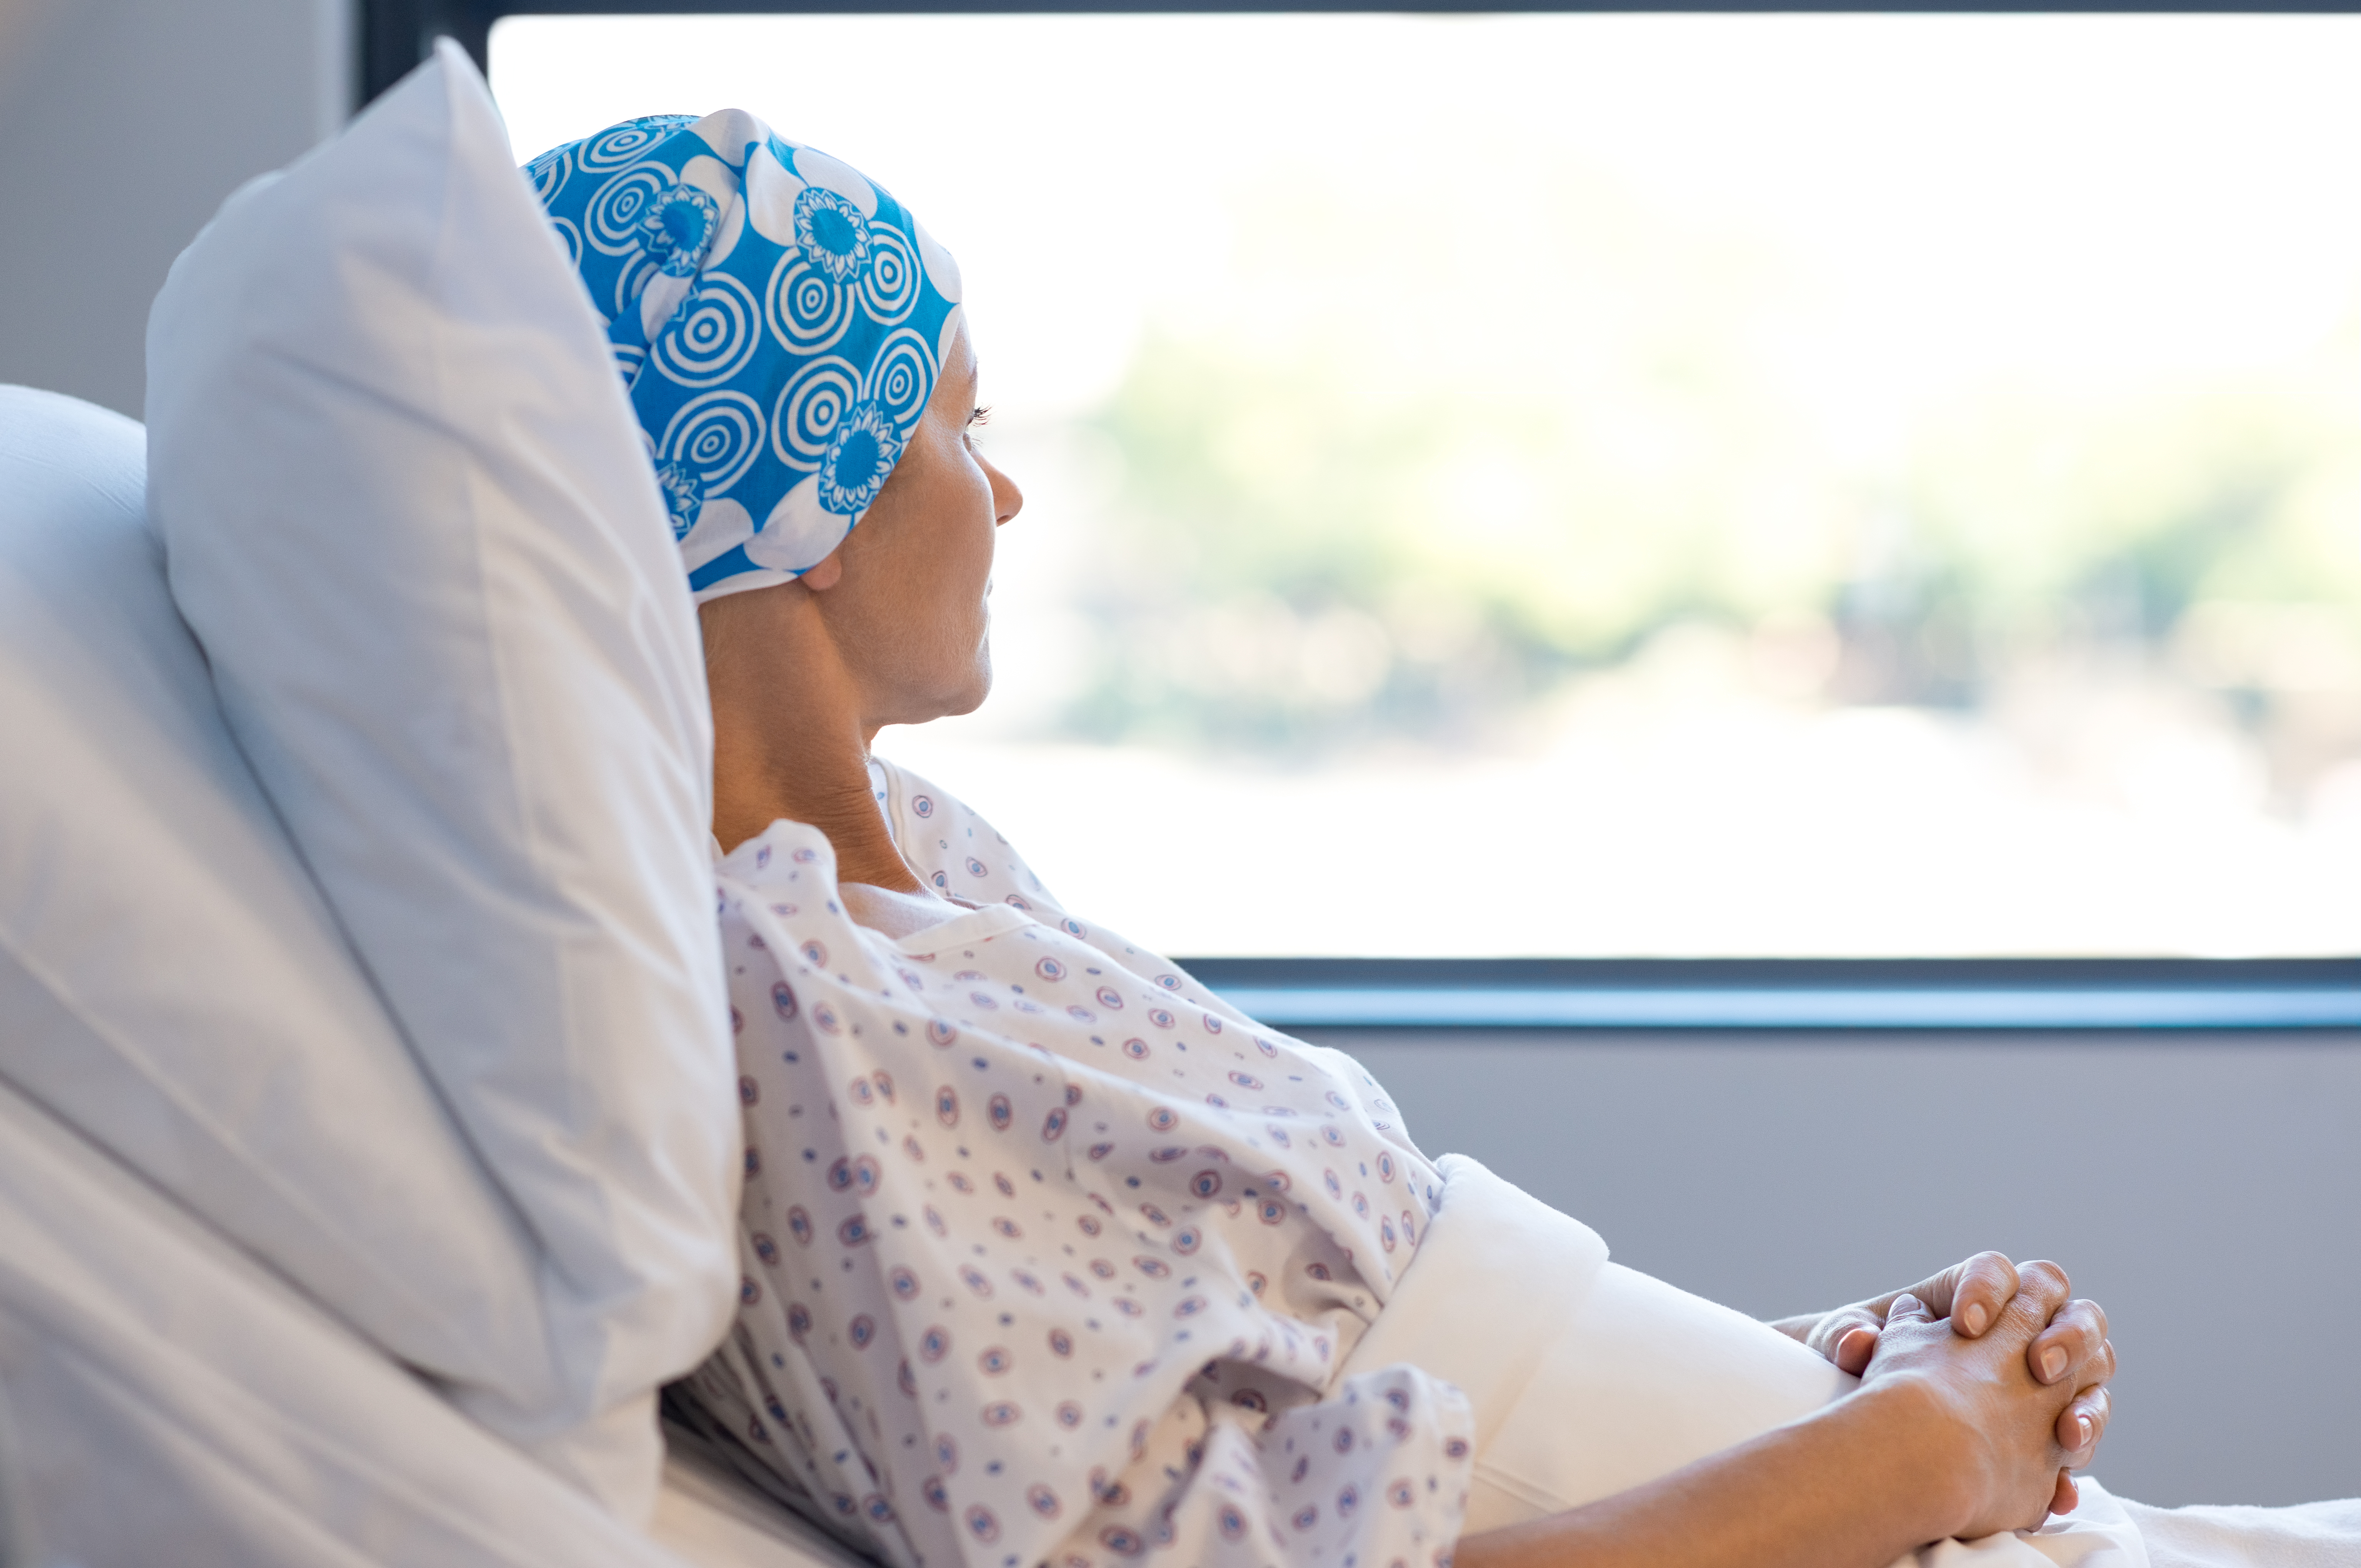 Une femme dans un lit d'hôpital souffrant d'un cancer | Source : Shutterstock